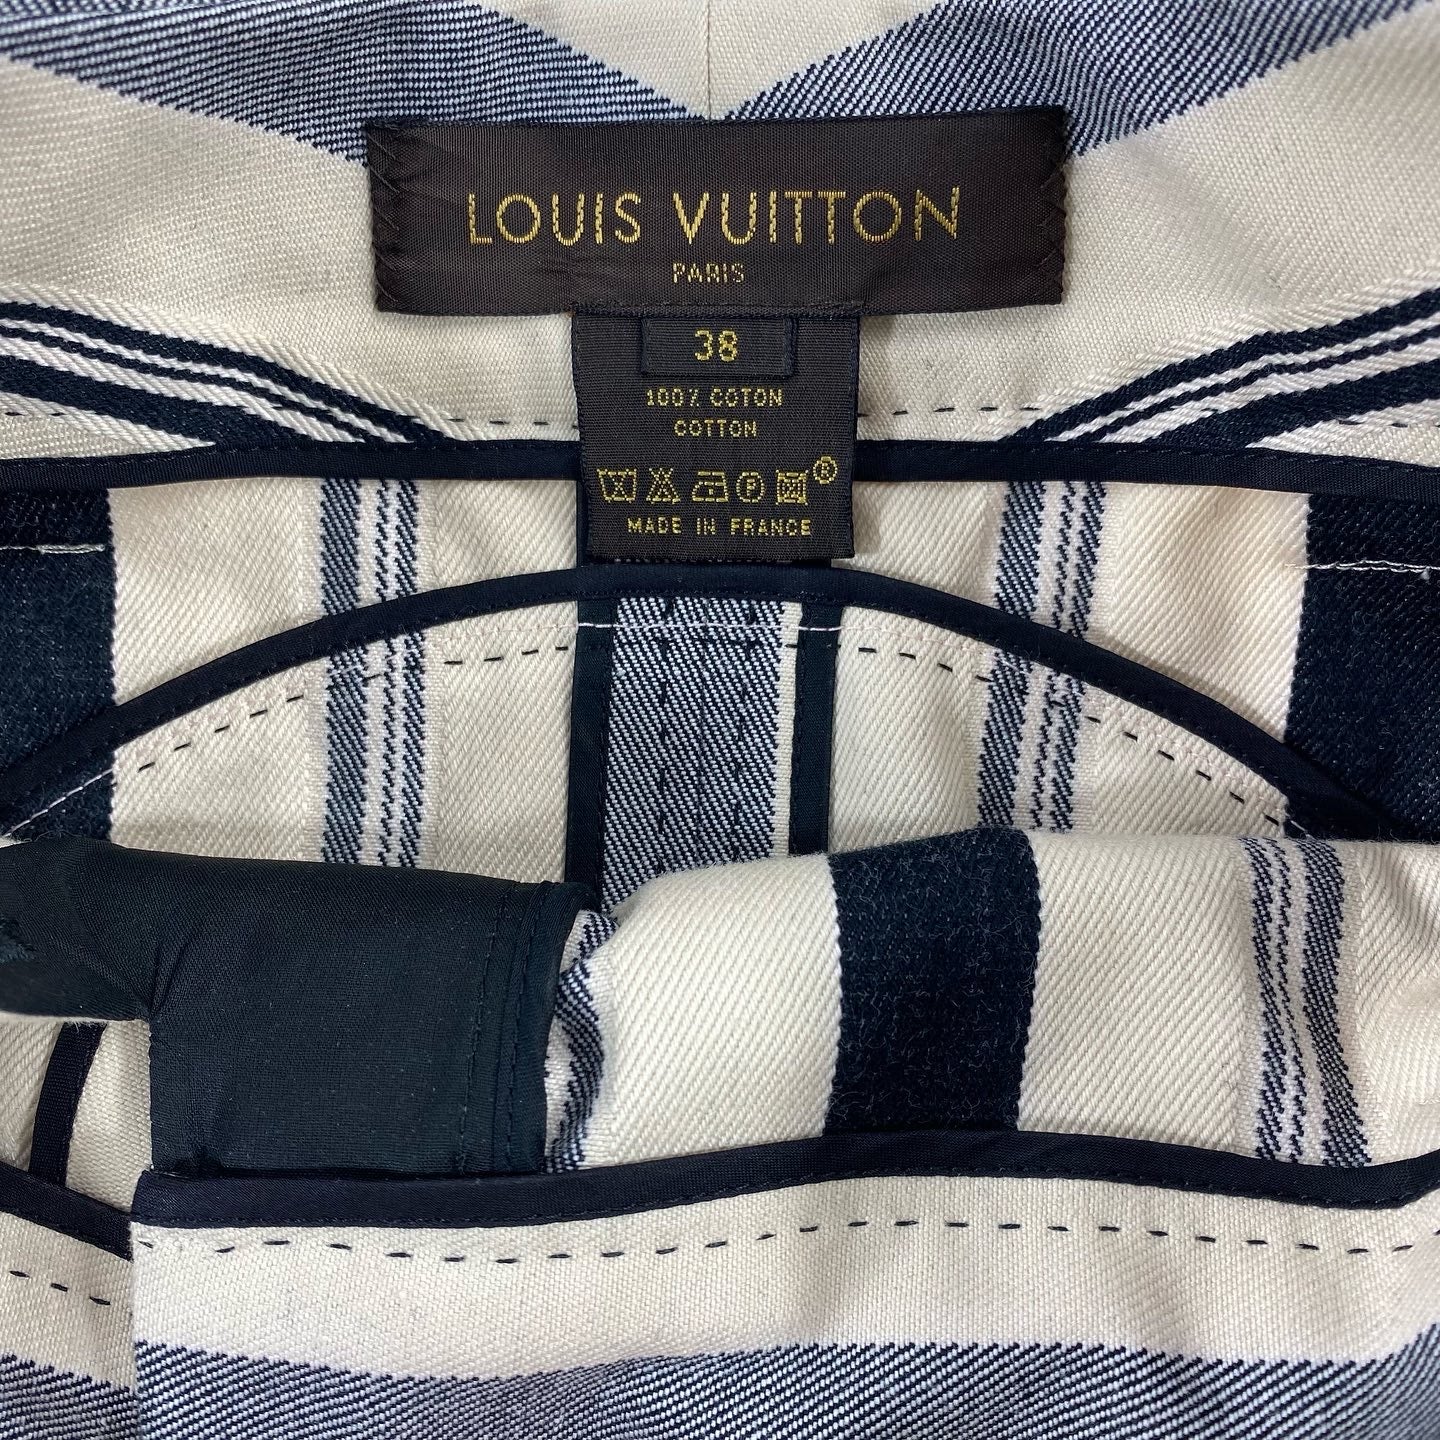 LV skirt sz 38 Louis Vutton authentic